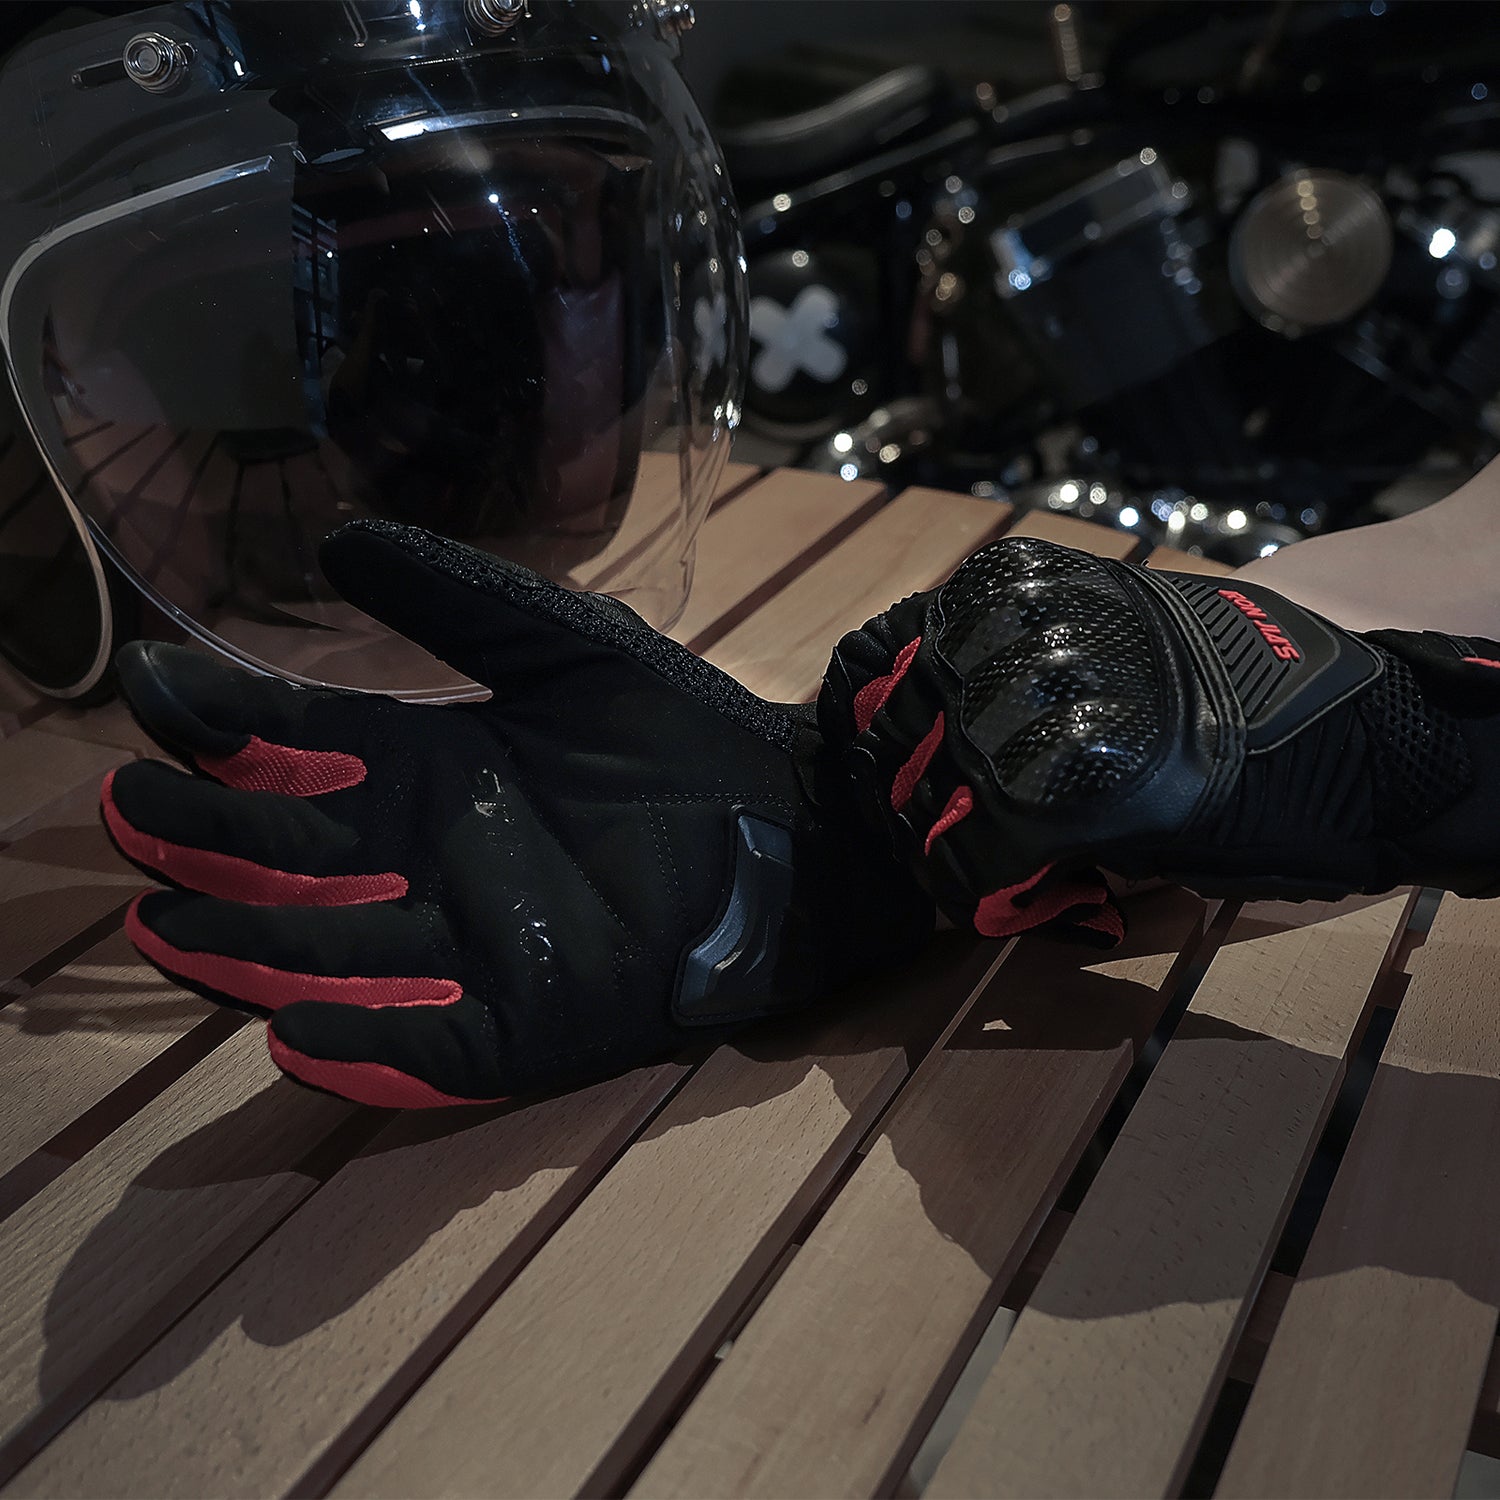 IRON JIA'S gants de Moto pour hommes,gants de Moto imperméables,coupe vent  d'hiver,gants de Moto pour écran tactile,gants d'équitation - Type  JIA02-Red - M